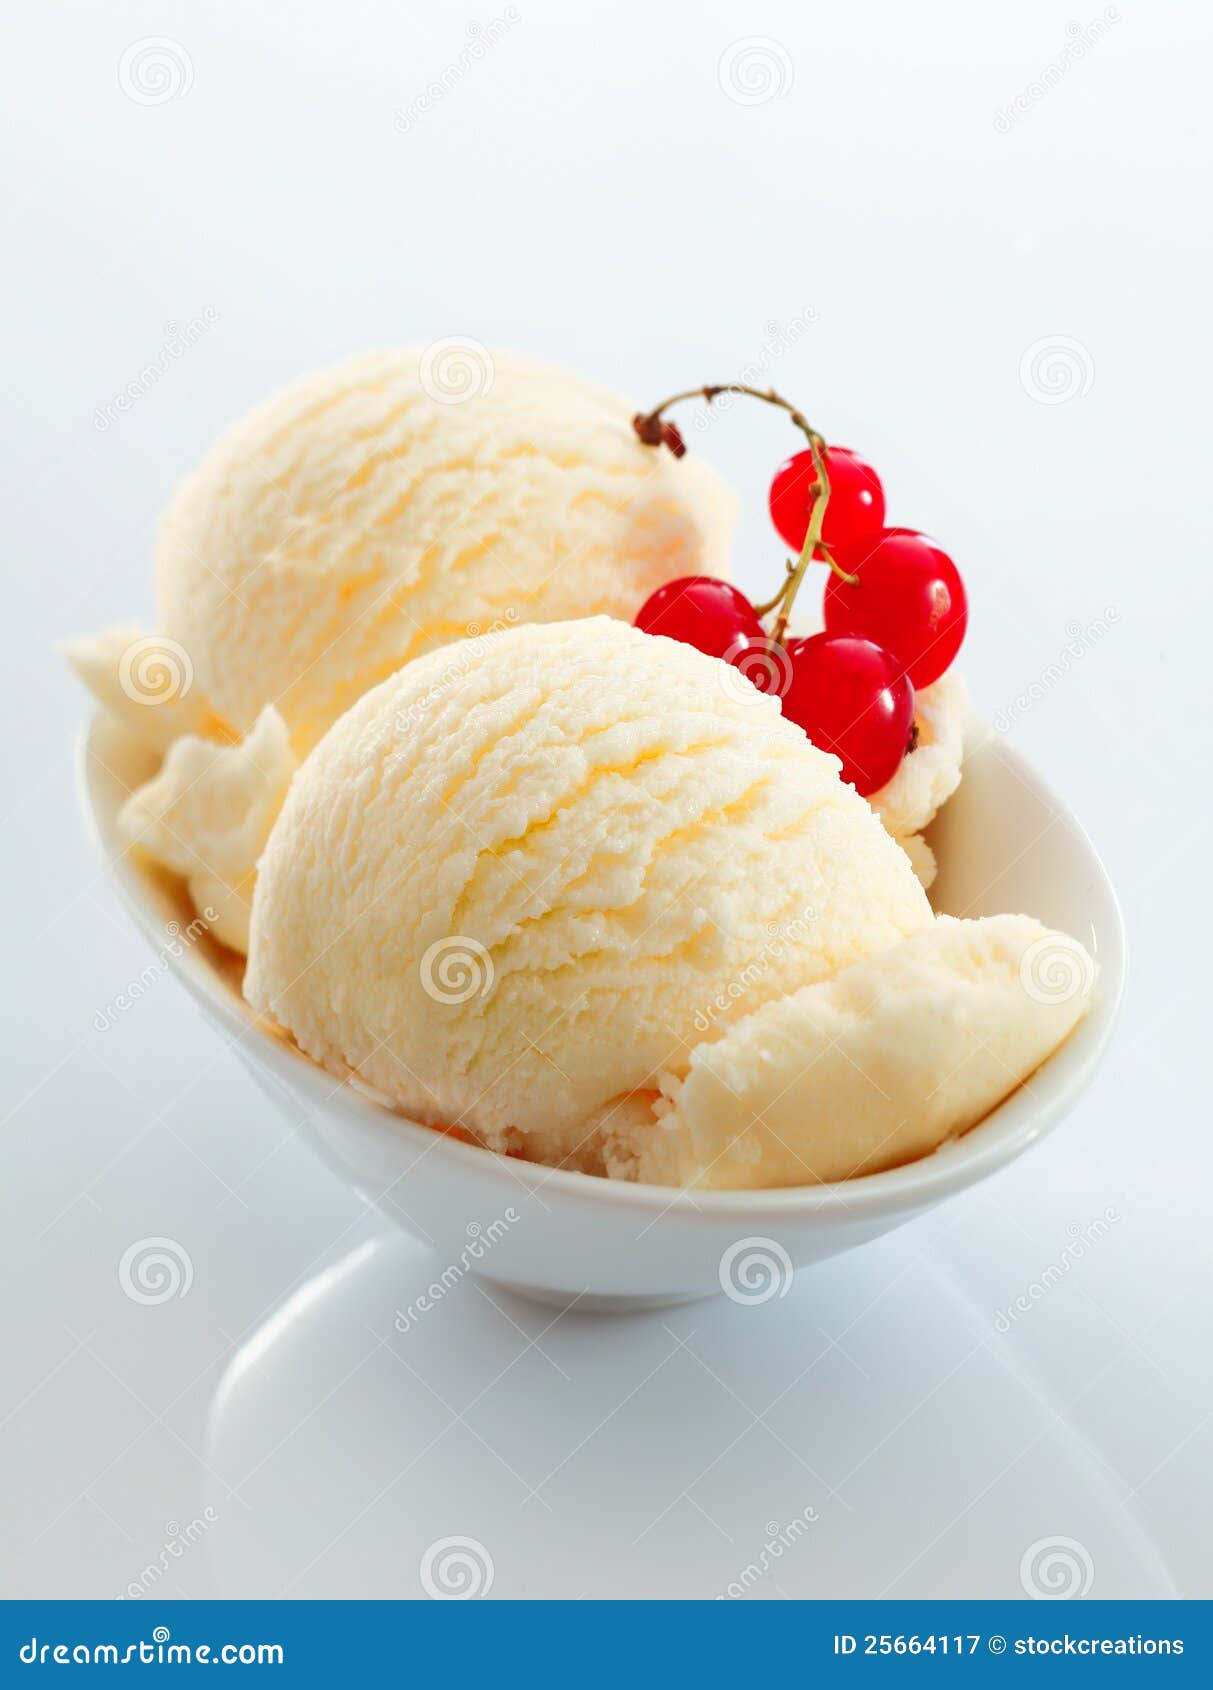 vanilla icecream and redcurrants